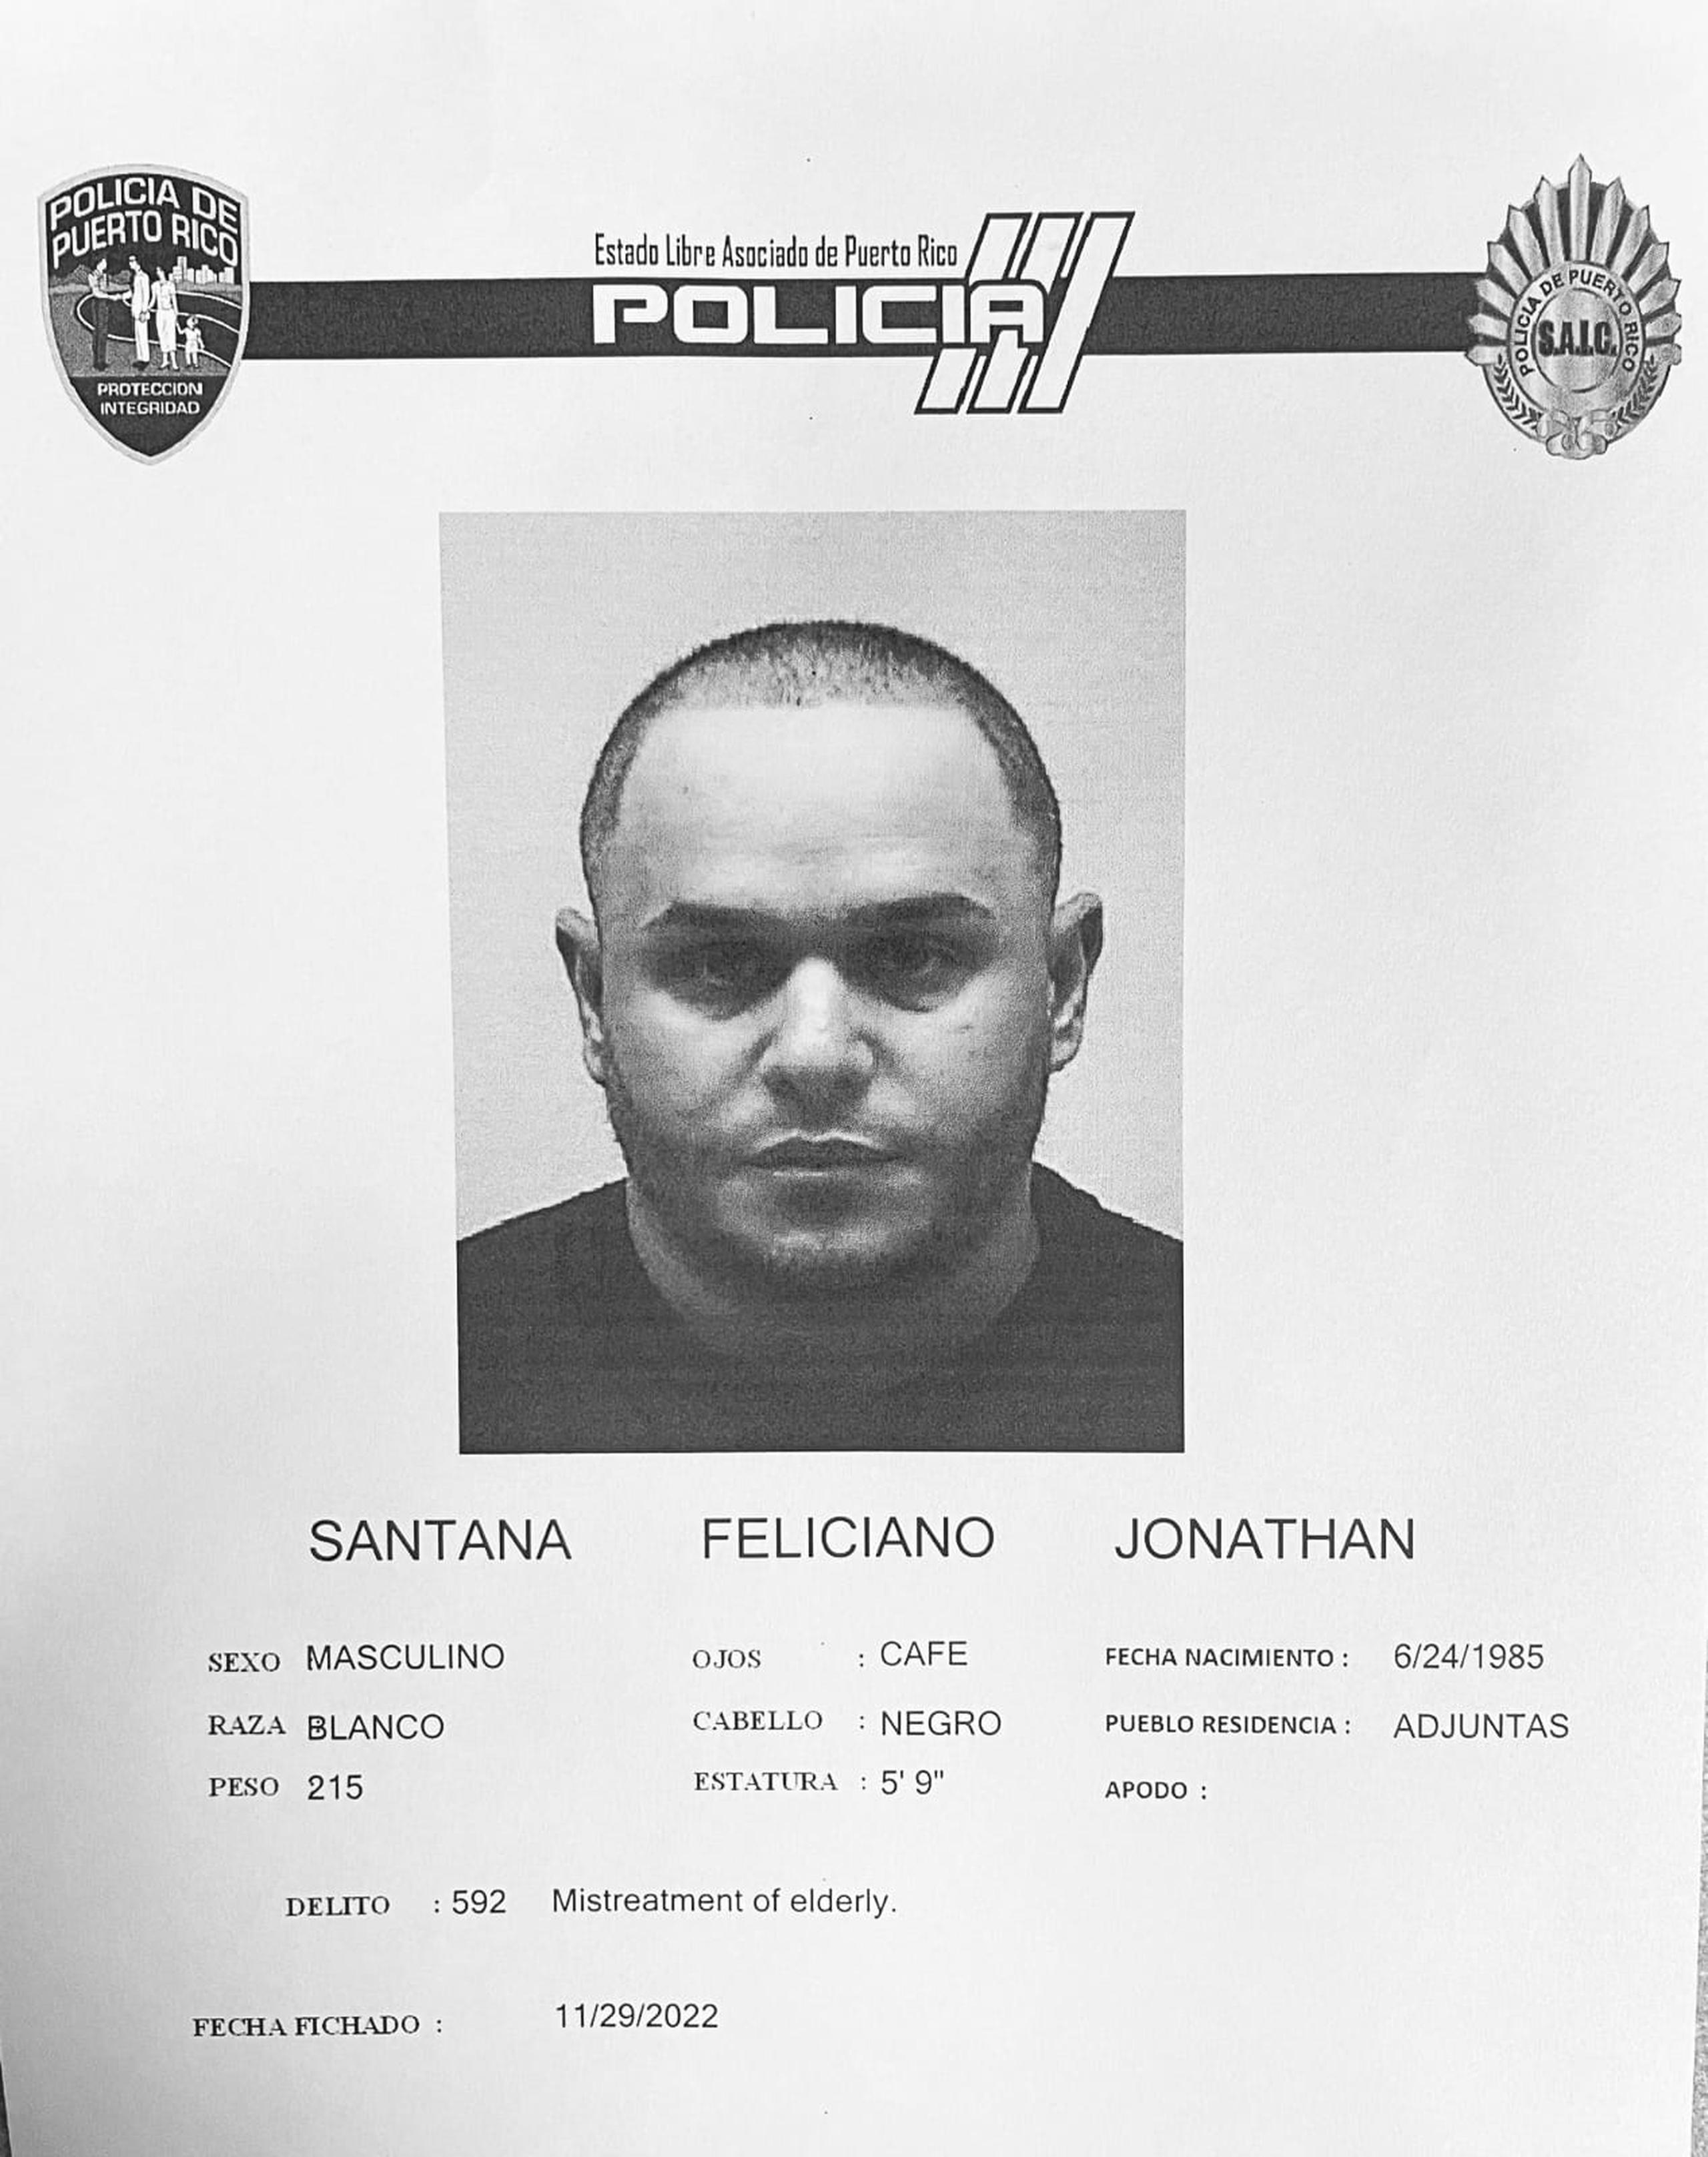 Jonathan Santana Feliciano enfrenta un cargo por maltrato a una persona de edad avanzada.